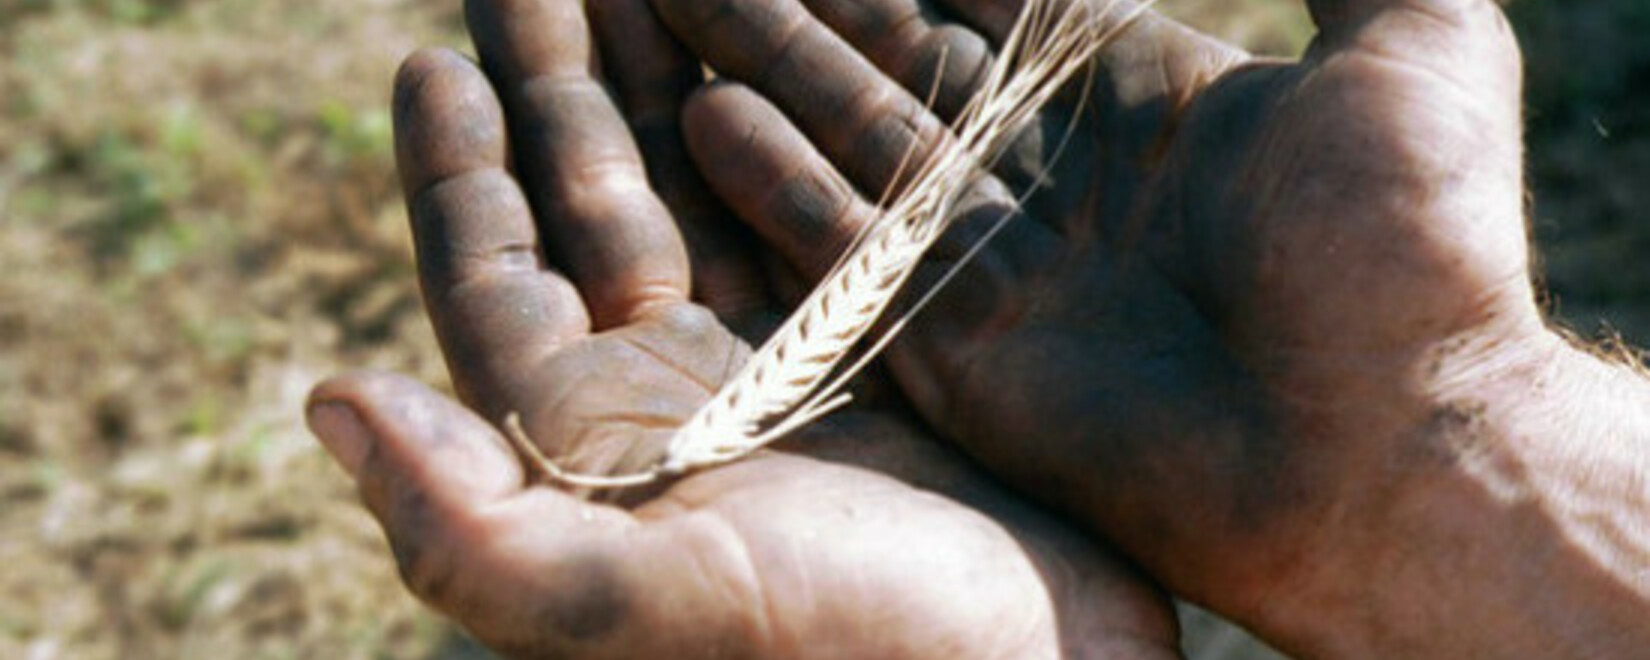 Зерновой союз предупредил о рисках для российского агропрома из-за квотирования импорта семян